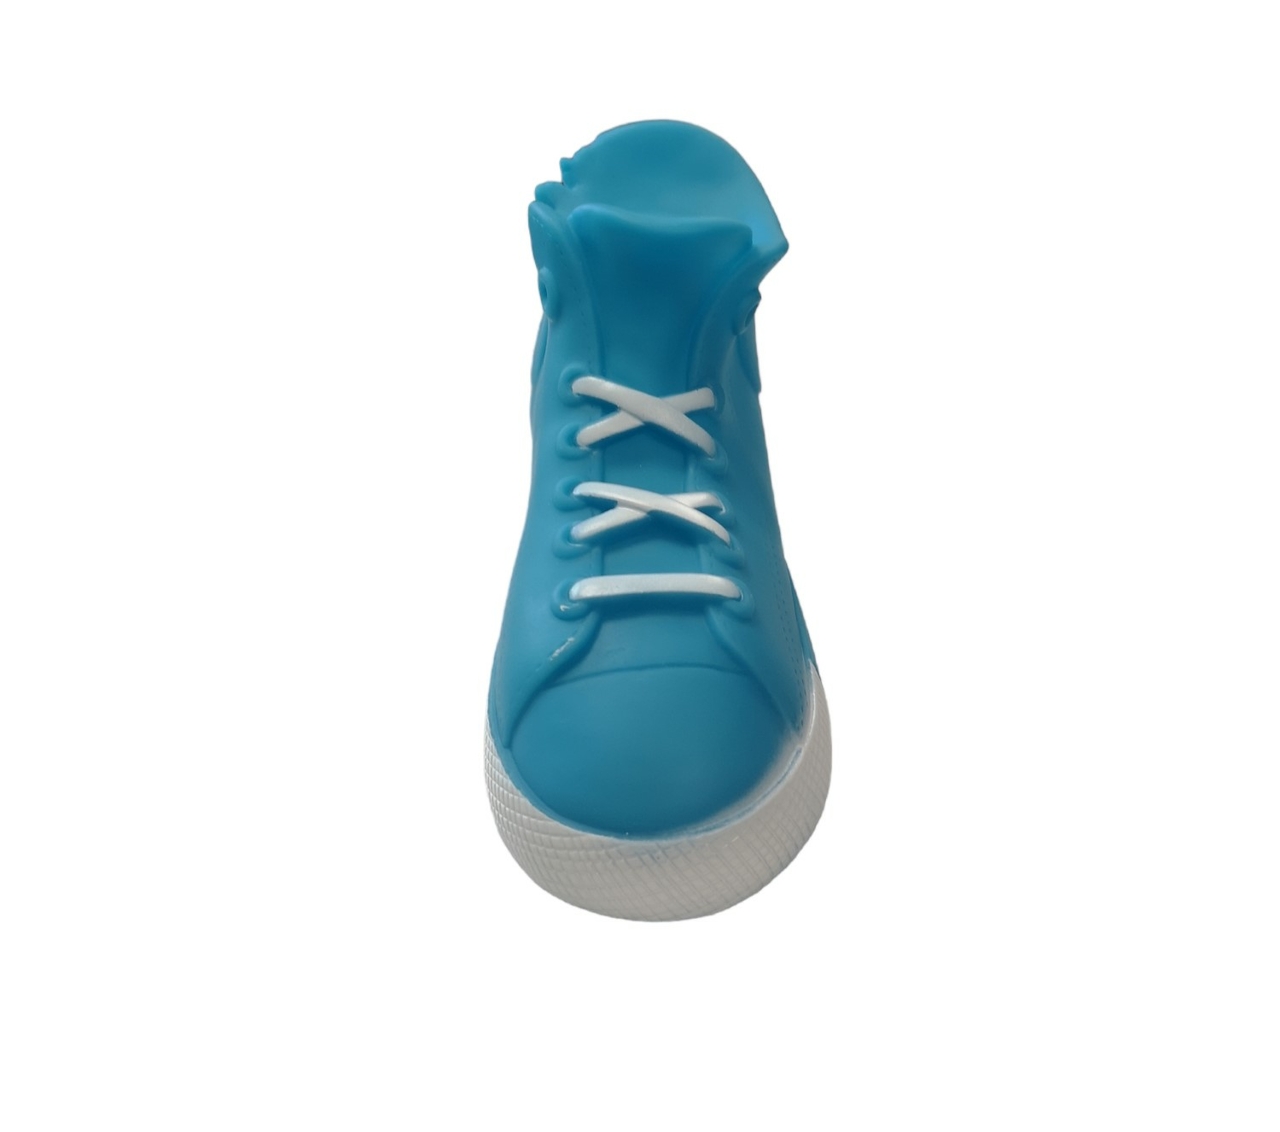 Nobleza Hondenspeelgoed - latex schoen - Piepspeelgoed - Lichtblauw - piepspeeltje - schoen